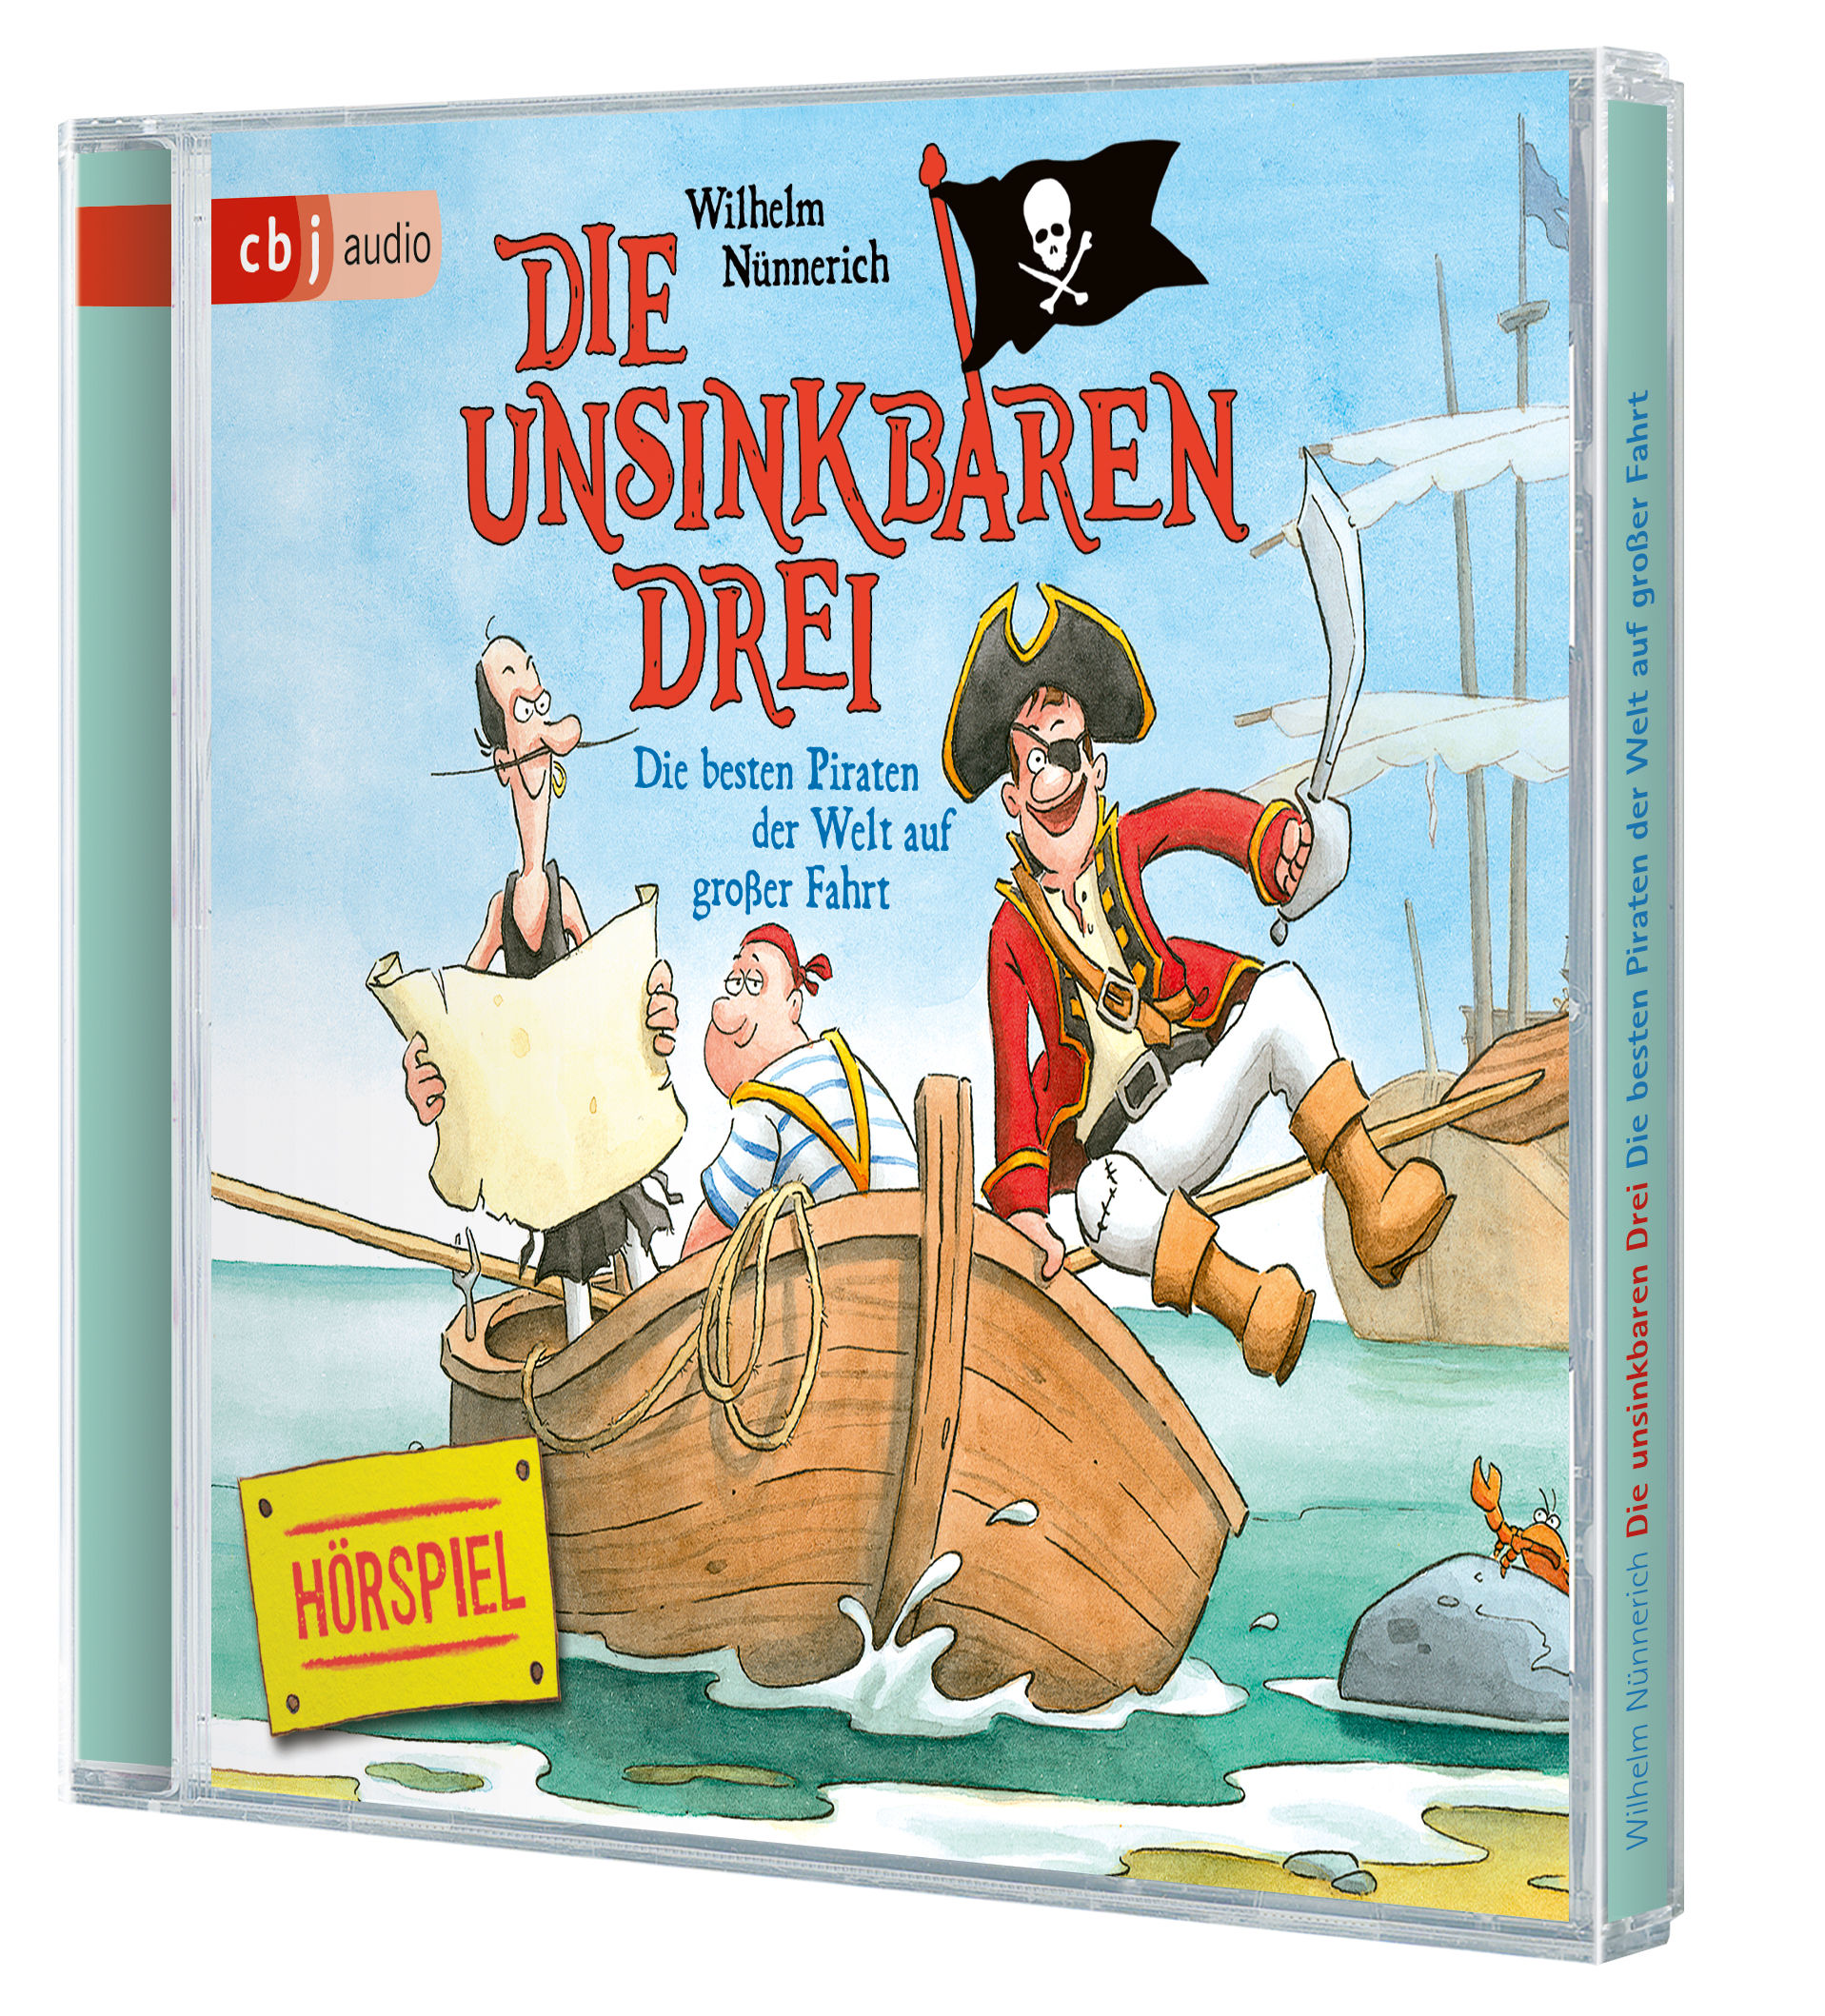 Die Unsinkbaren Drei - Die besten Piraten der Welt auf großer Fahrt (Audio-CD)